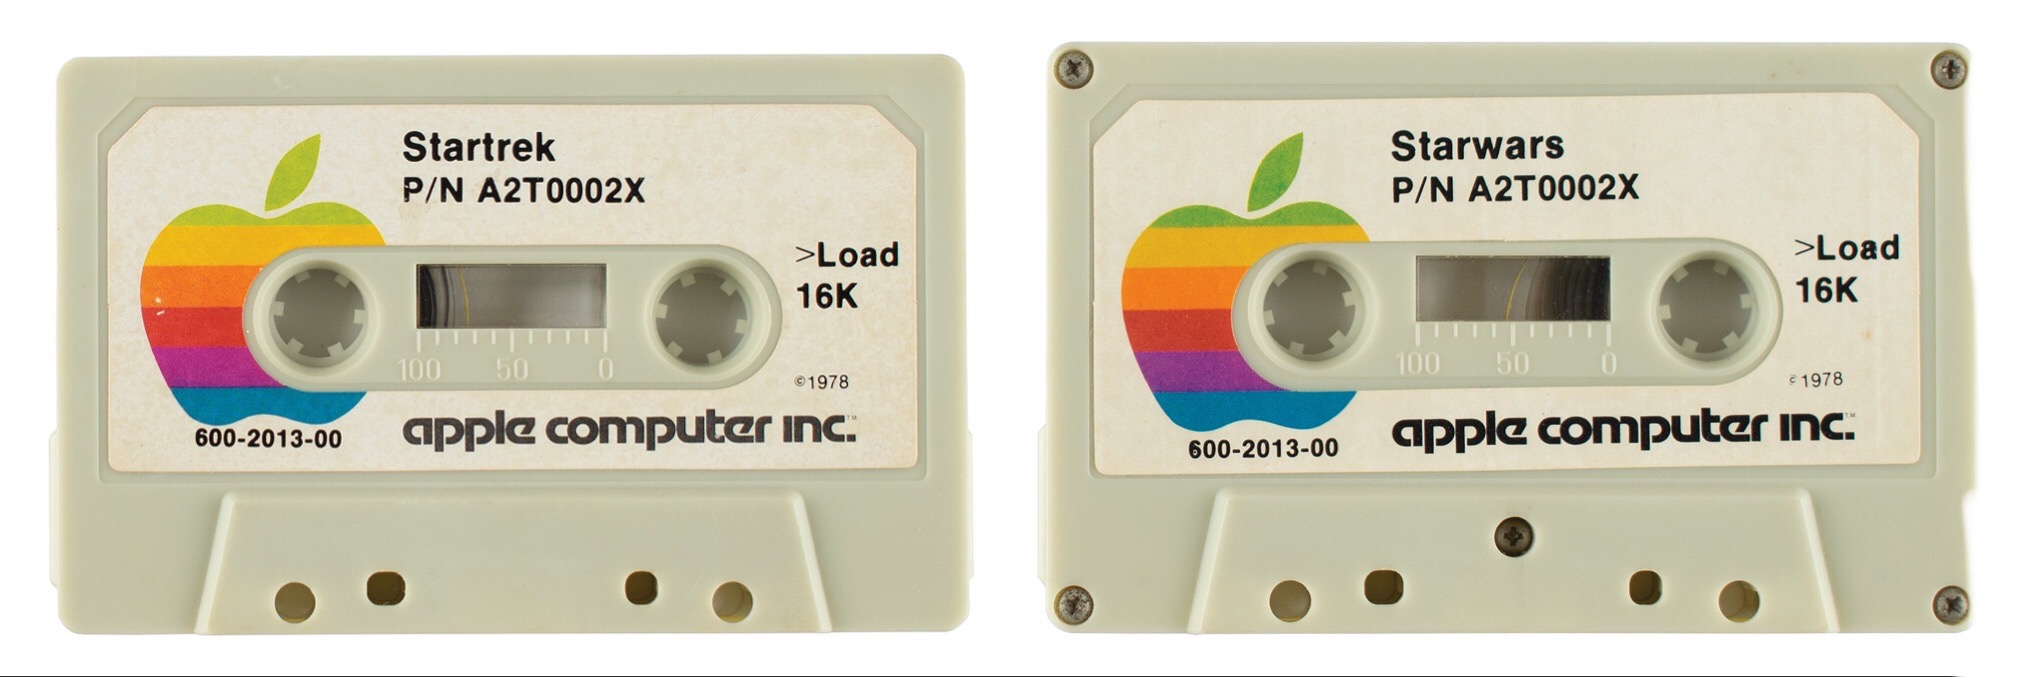 Star Wars vagy Star Trek? Ezen a kérdésen azóta is vitatkoznak a rajongók, pedig az Apple már 1978-ban megválaszolta: mindkettő.